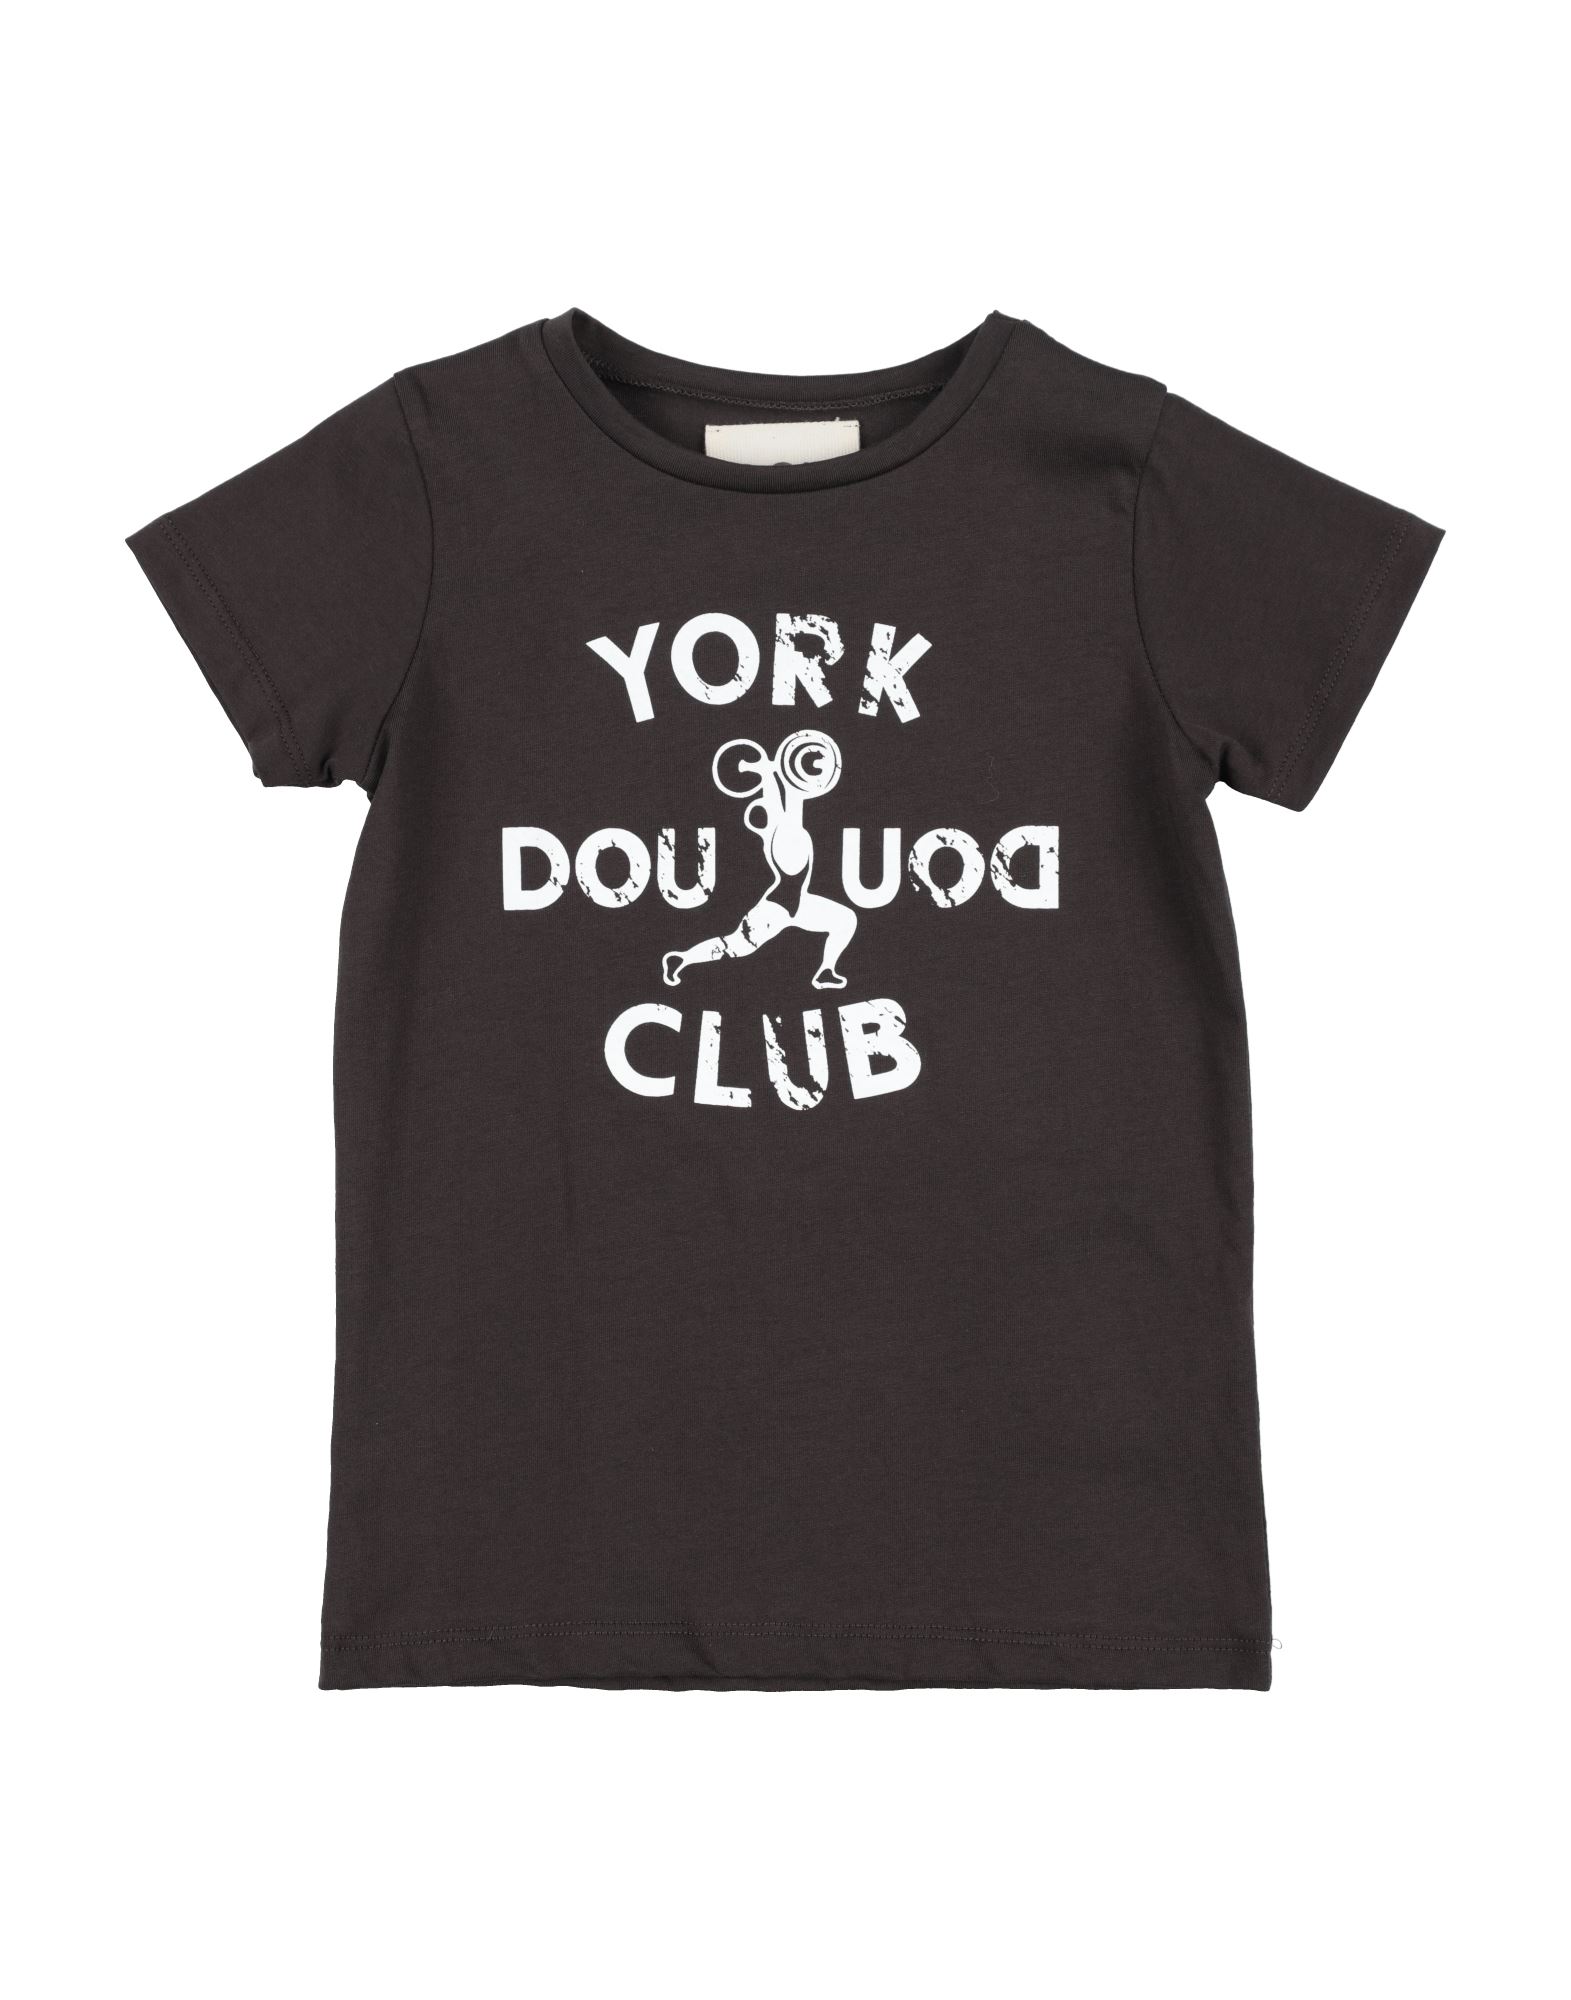 Douuod Kids'  T-shirts In Dark Brown